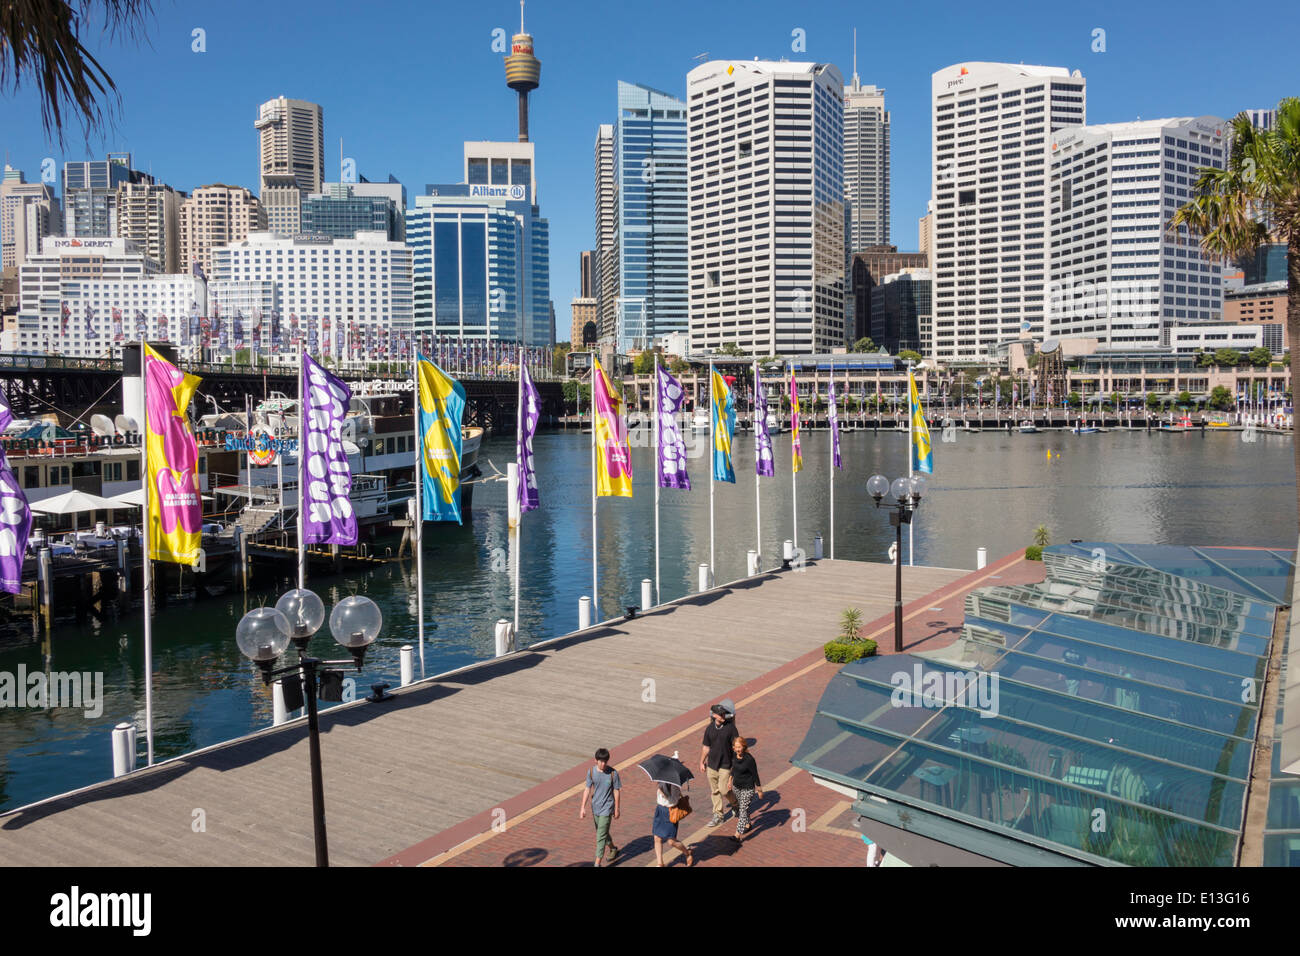 Sydney Australien, Darling Harbour, Hafen, Cockle Bay Promenade, Wasser, Sydney Tower, Wolkenkratzer, Skyline der Stadt, AU140311062 Stockfoto